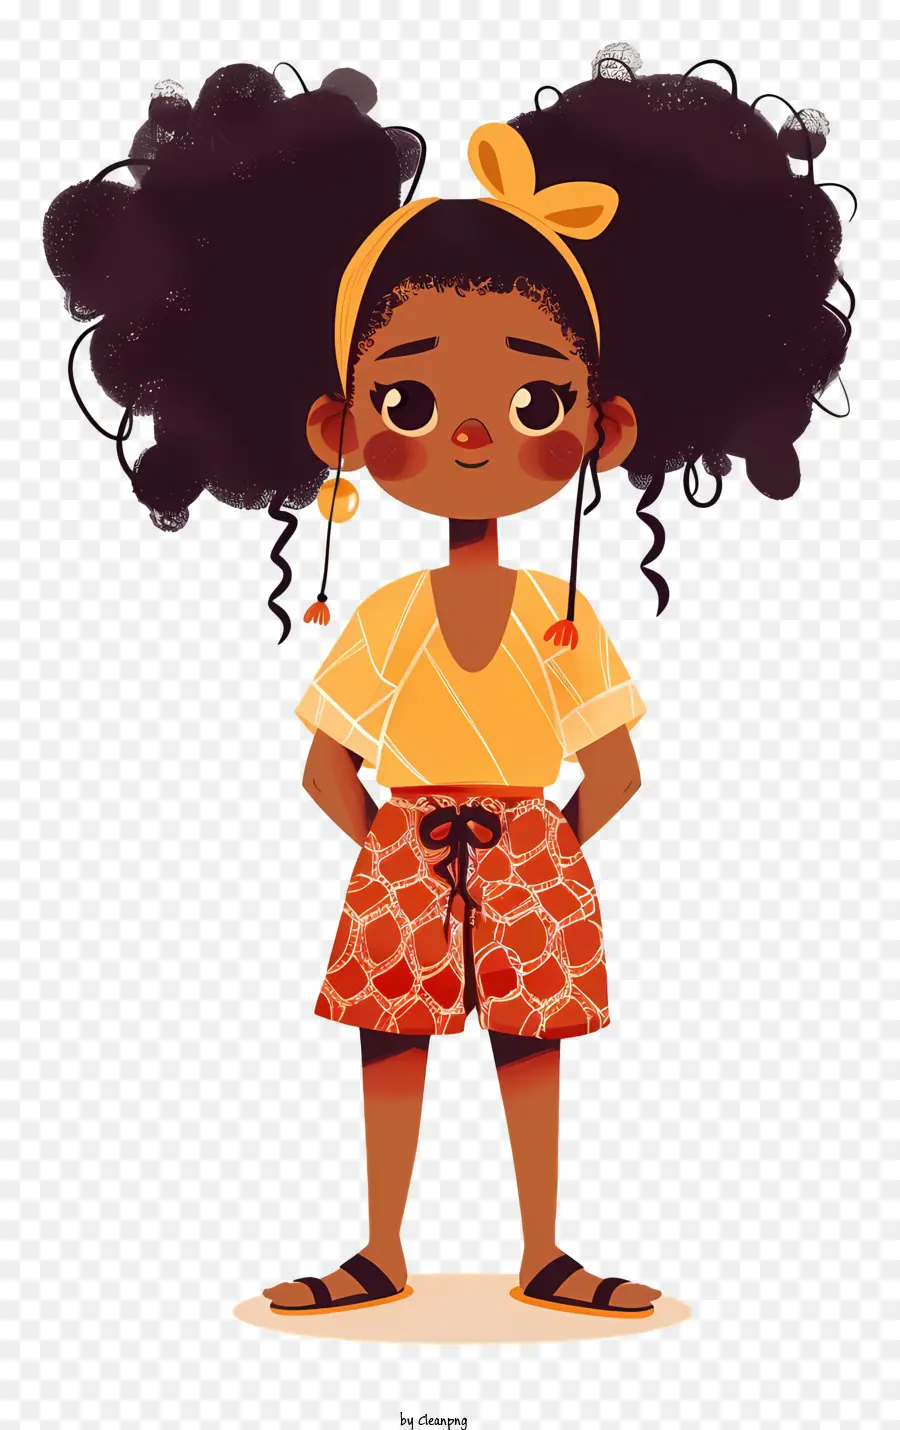 ragazza ragazza africana ragazza afro acconciatura camicia bianca - Giovane ragazza con i capelli afro in outfit floreale